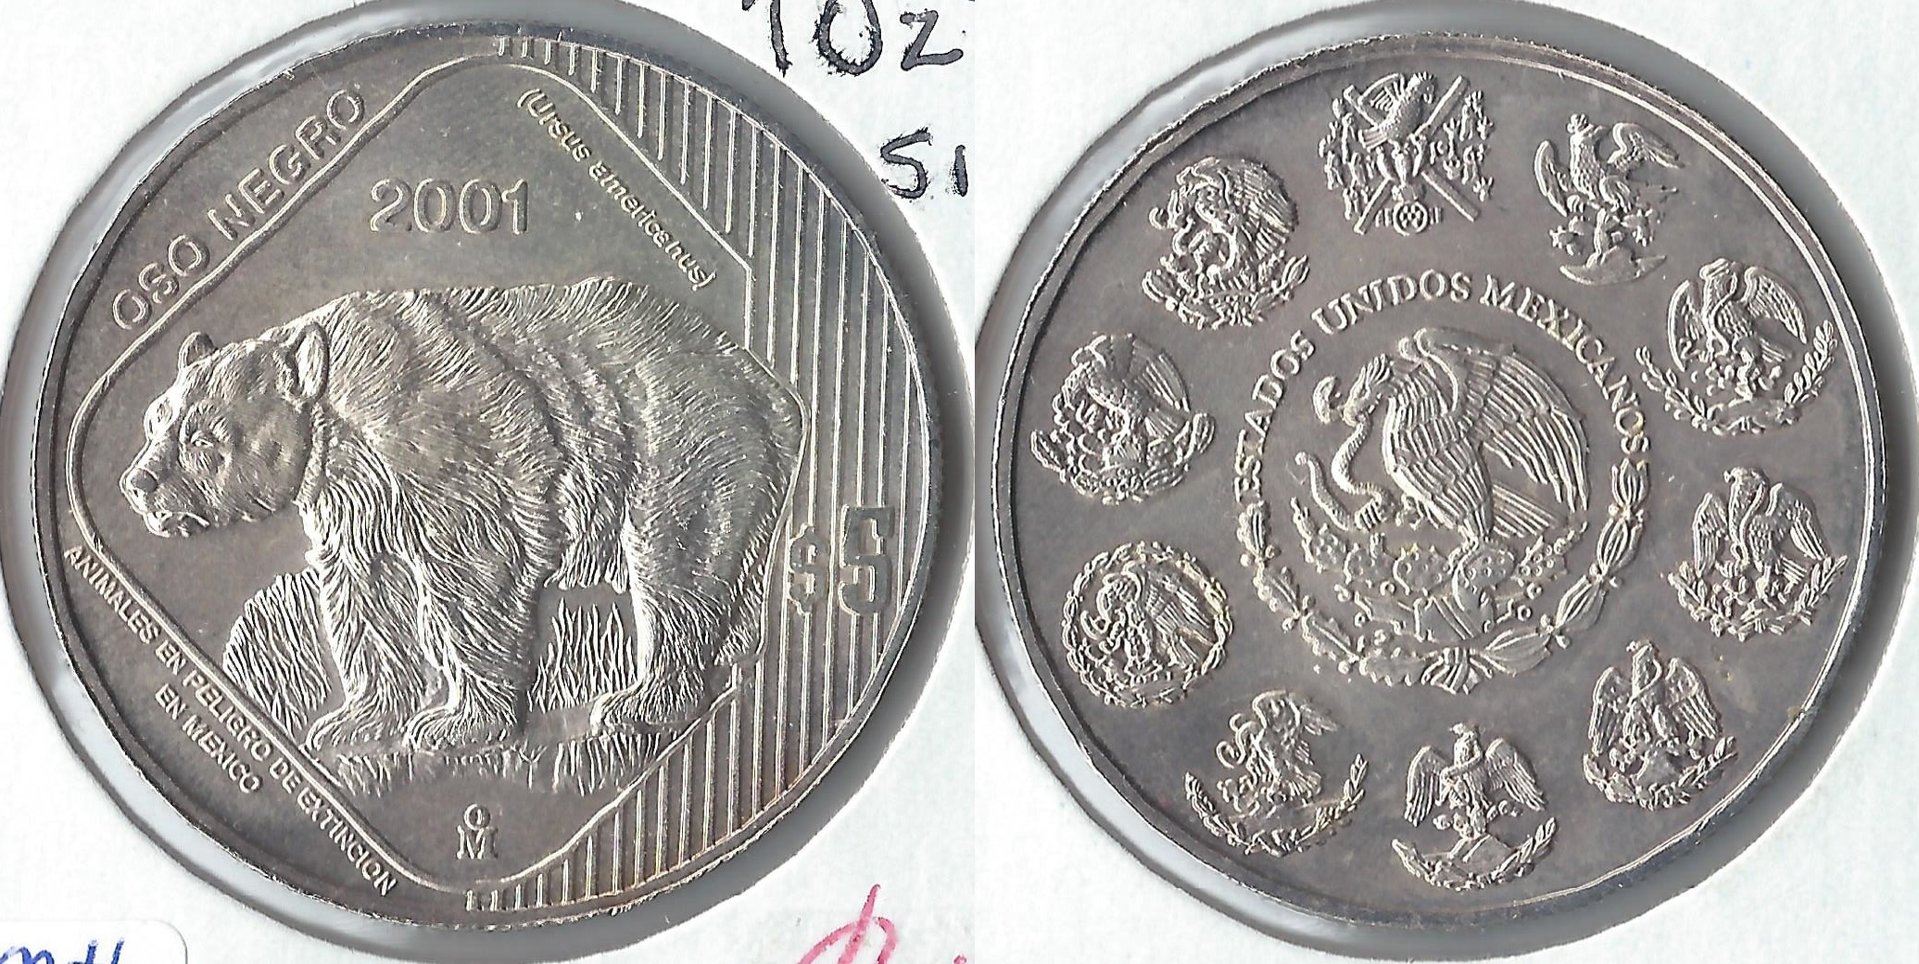 2001 mexico 5 pesos.jpg